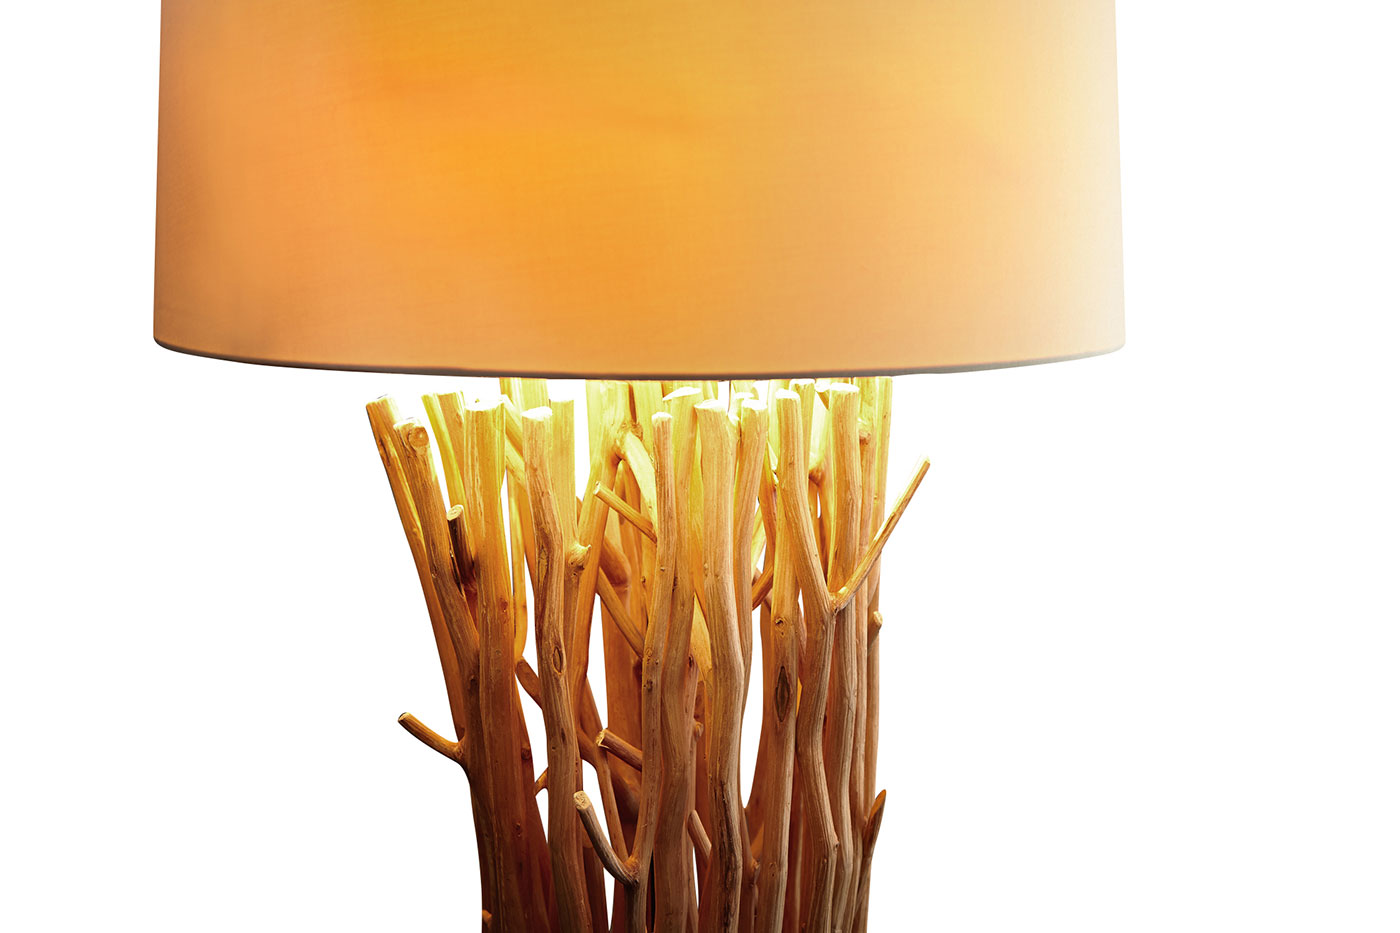 Lampe Stehlampe 175cm Holz Natur Beige Holzlampe Unikat Treibholz Leuchte